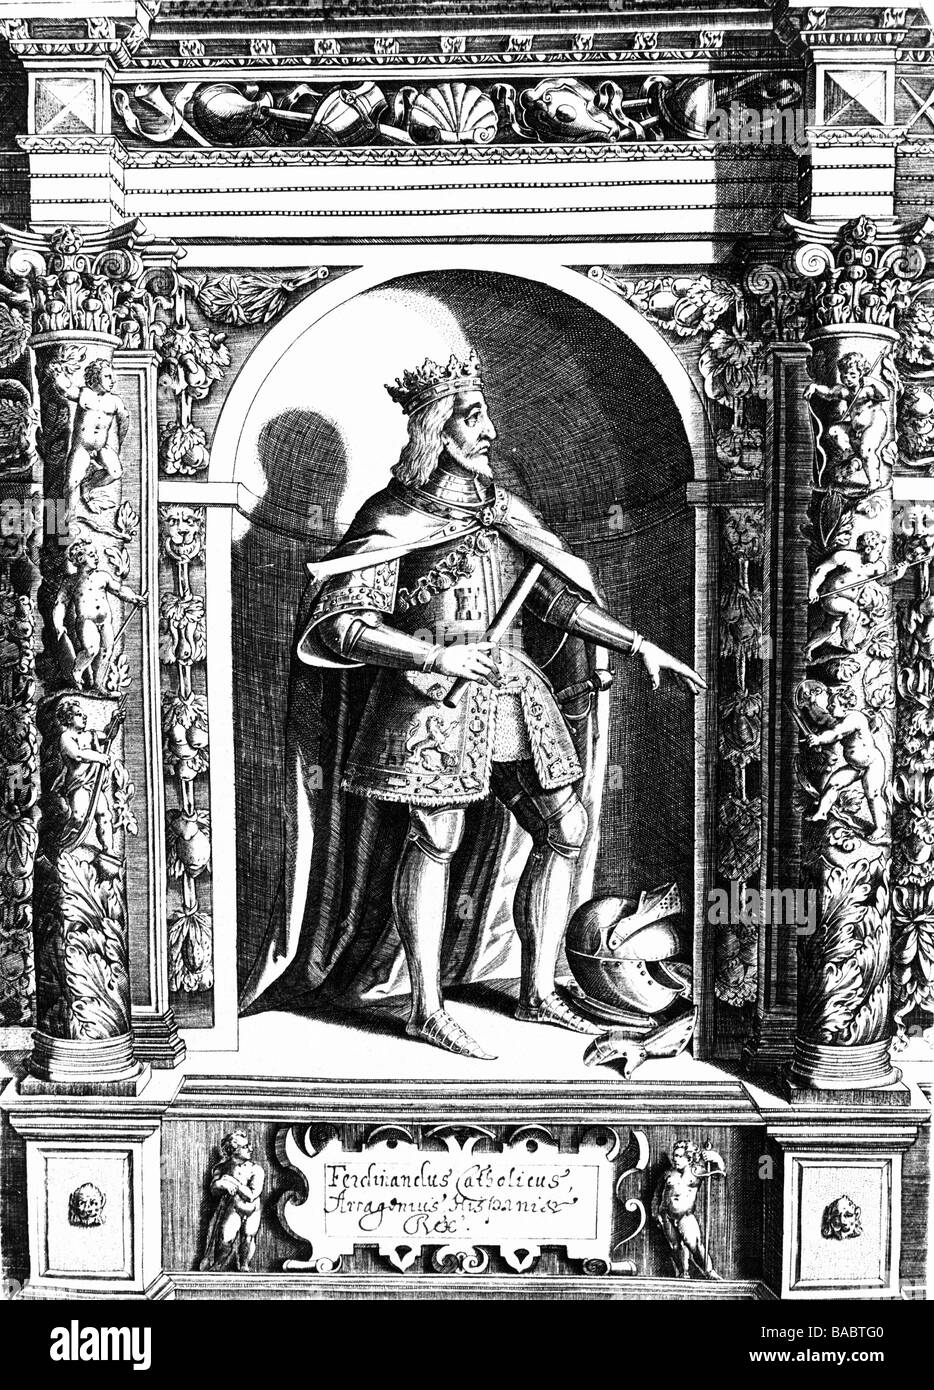 Ferdinand II, 10.3.1452 - 23.1.1516, le roi d'Aragon, pleine longueur, statue, gravure sur cuivre, l'artiste n'a pas d'auteur pour être effacé Banque D'Images